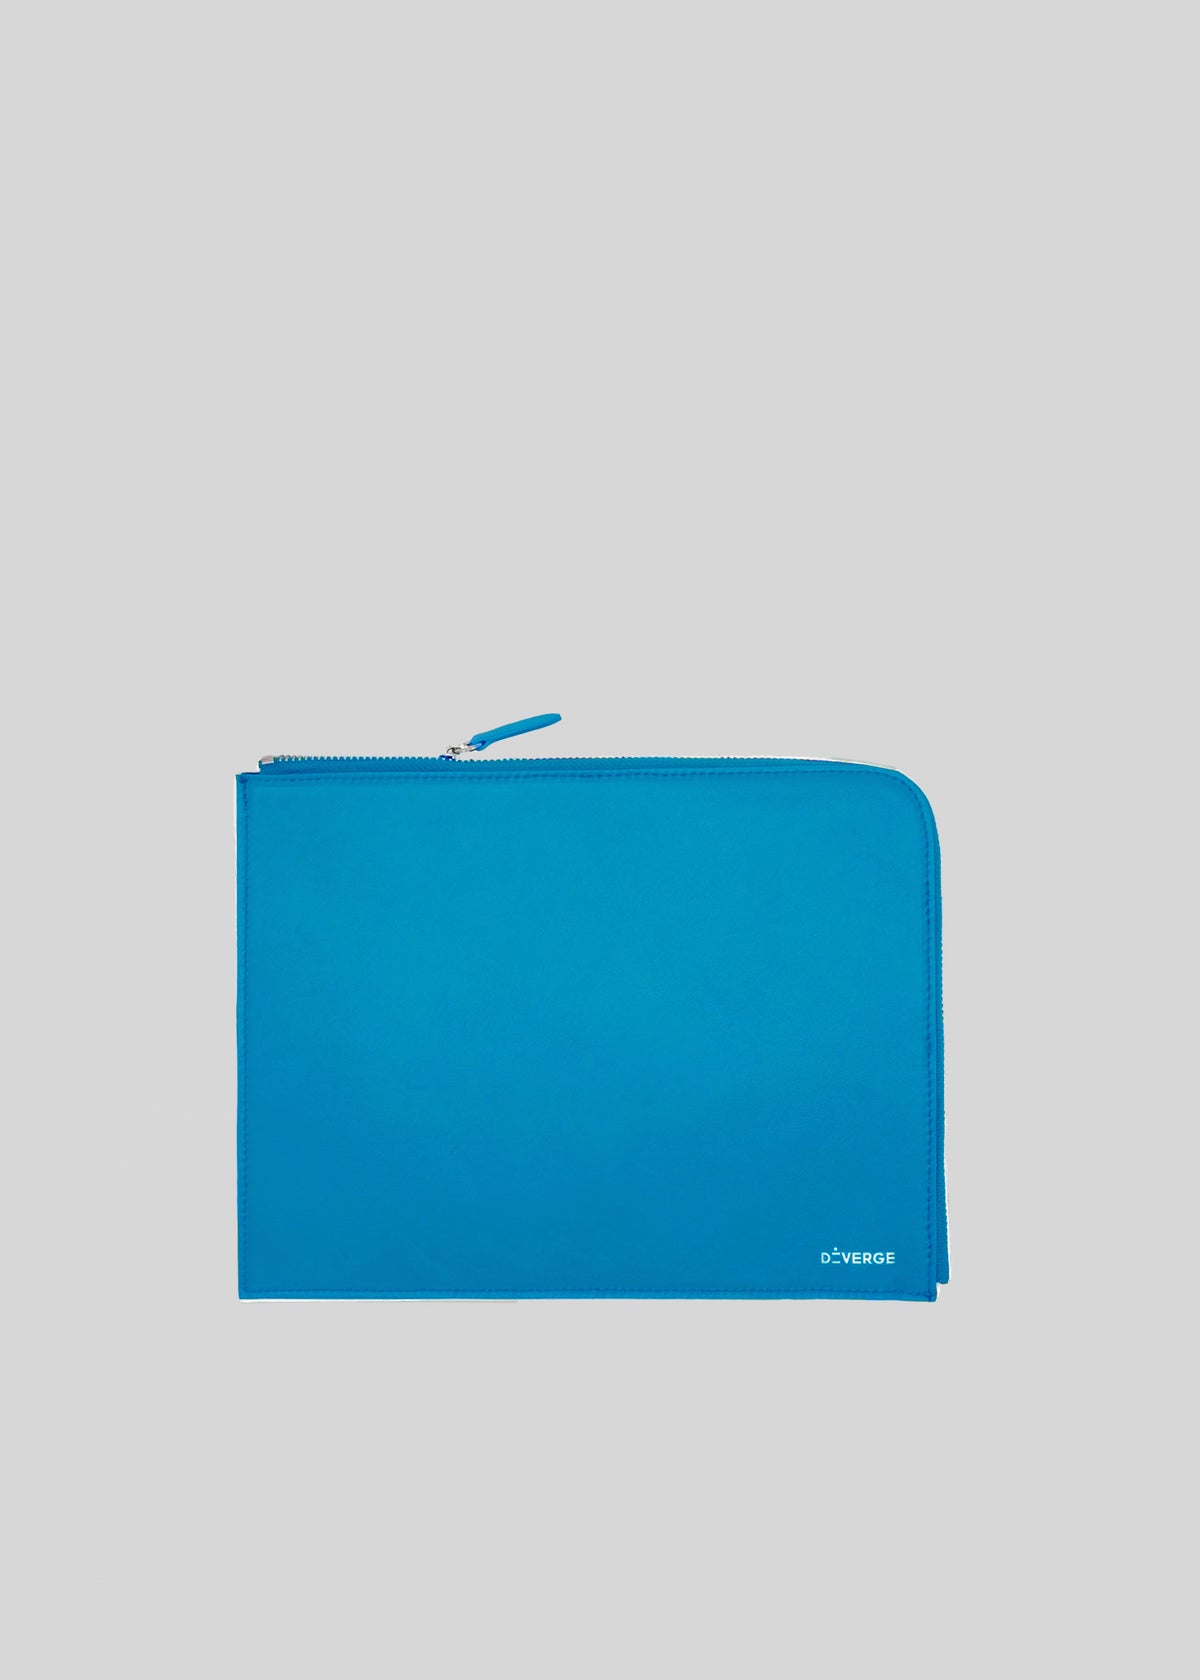 Una cartera con cremallera M Leather Pouch de color azul brillante con el nombre de la marca "ateveros" impreso en minúsculas en la esquina inferior derecha.